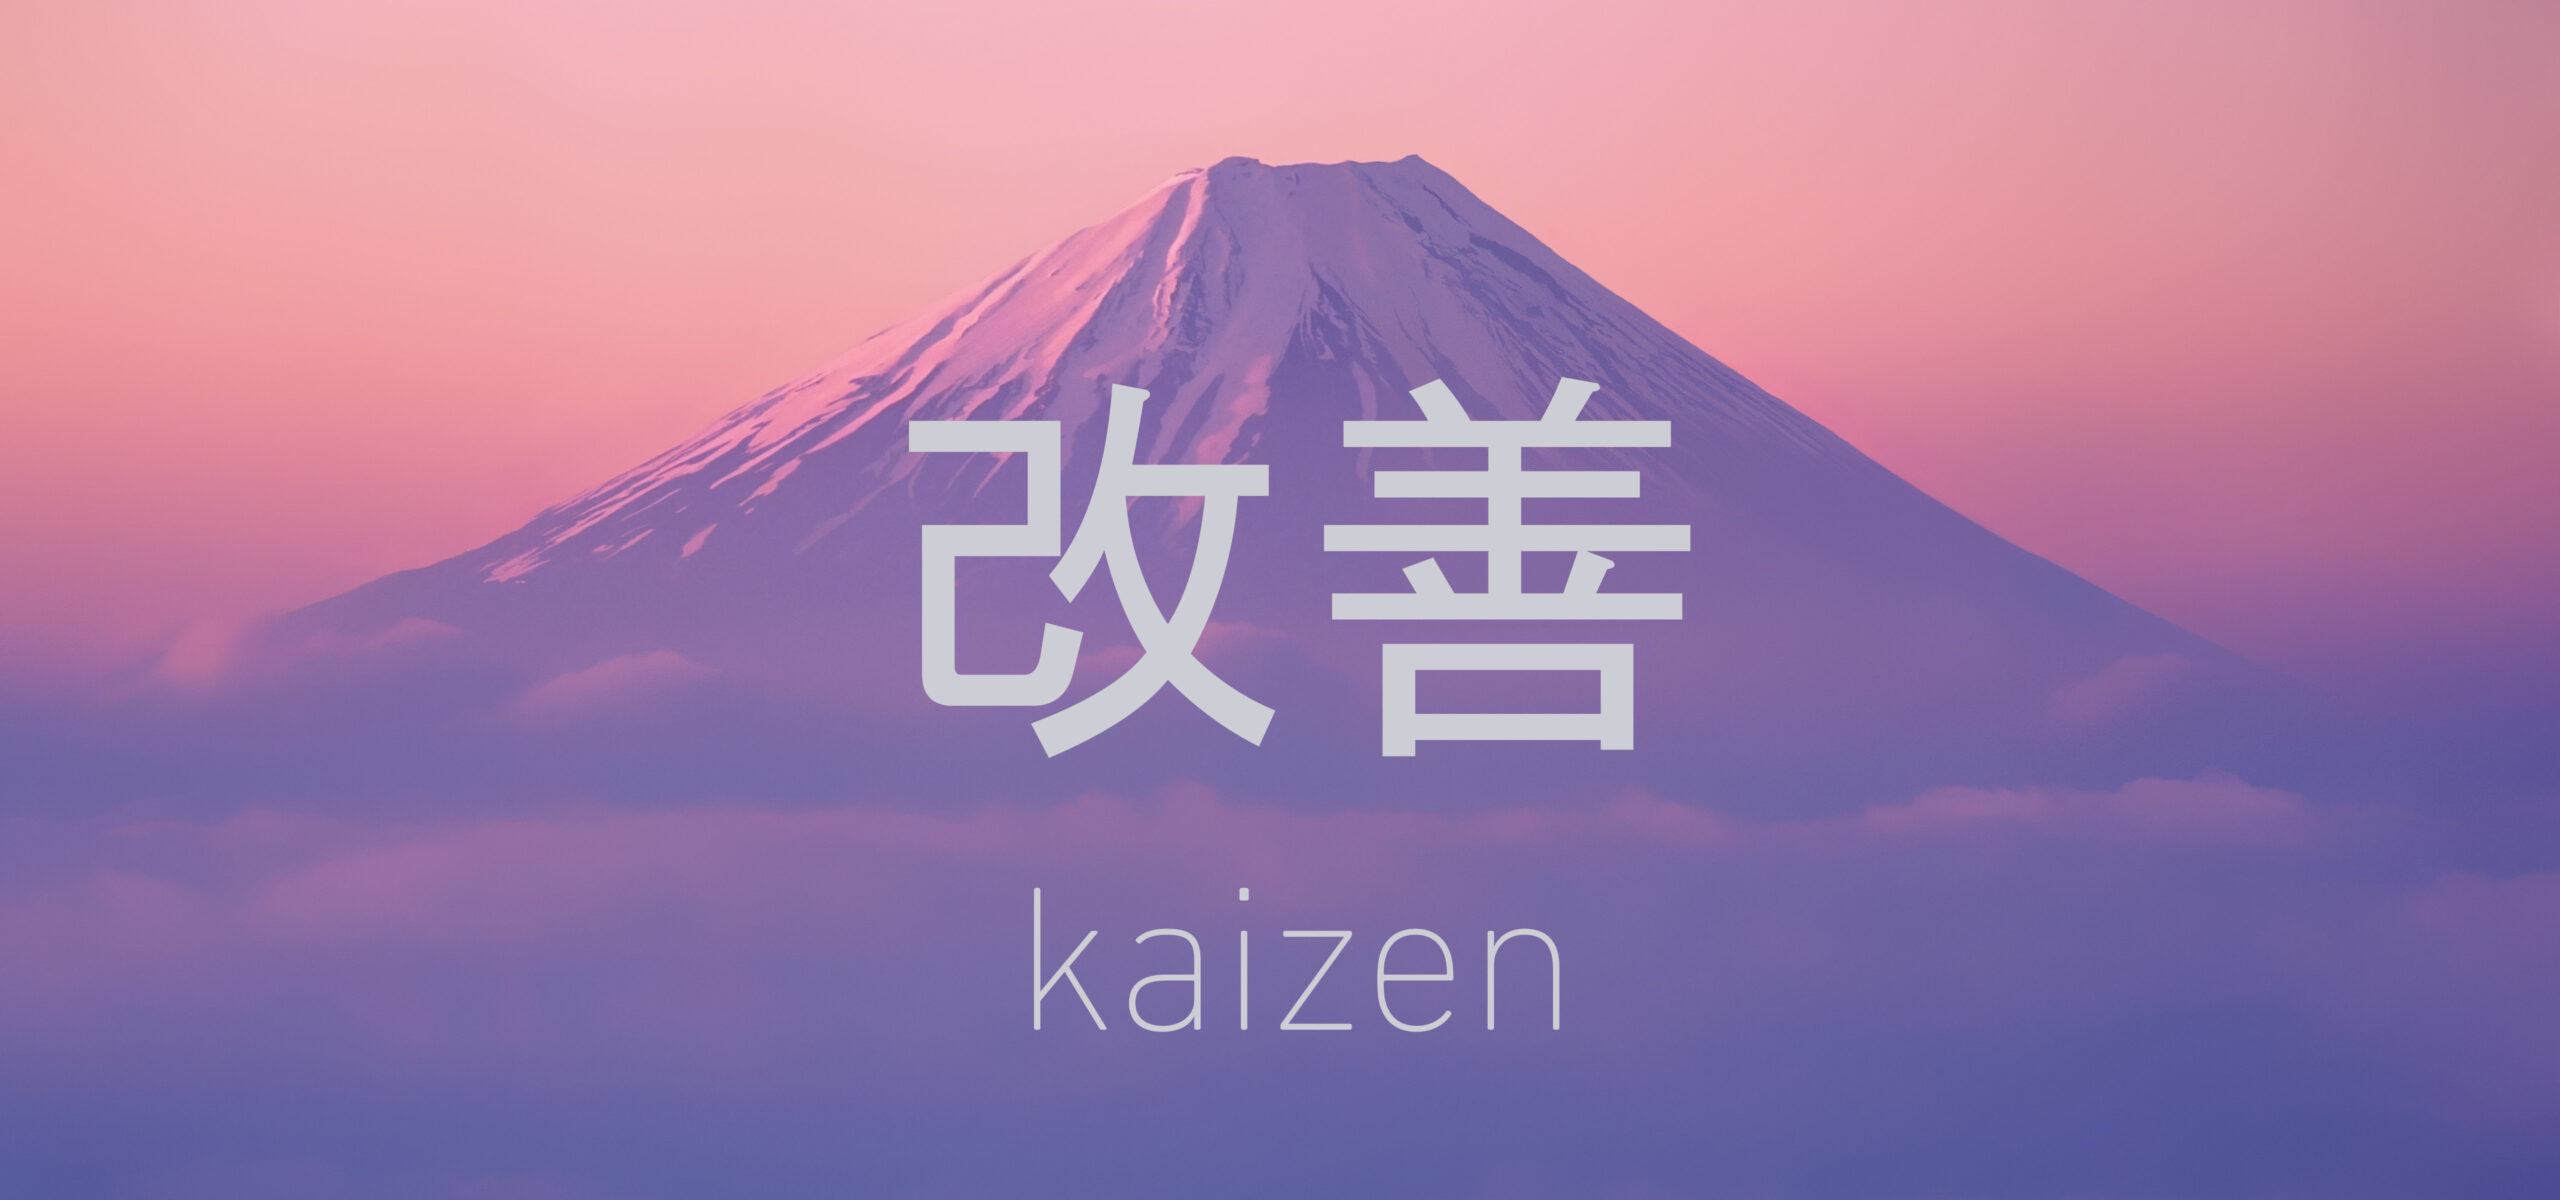 kaizen wallpaper